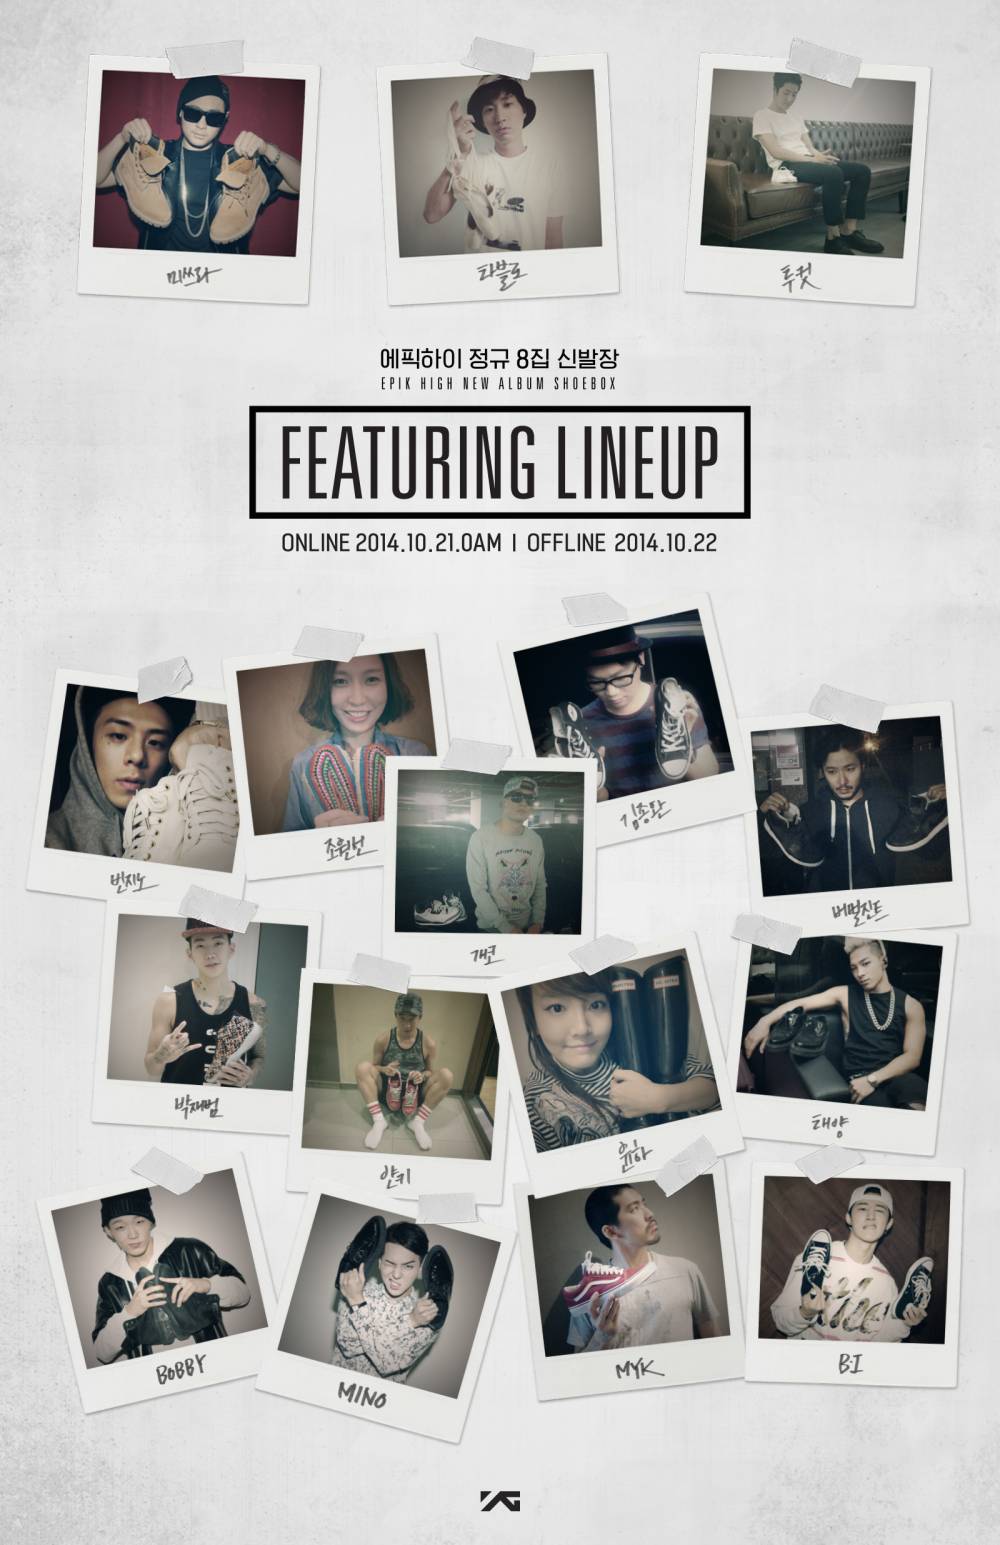 Taeyang, Jay Park, Epik High, Younha, Gaeko, Verbal Jint, Song Min Ho (Mino), Beenzino, Bobby